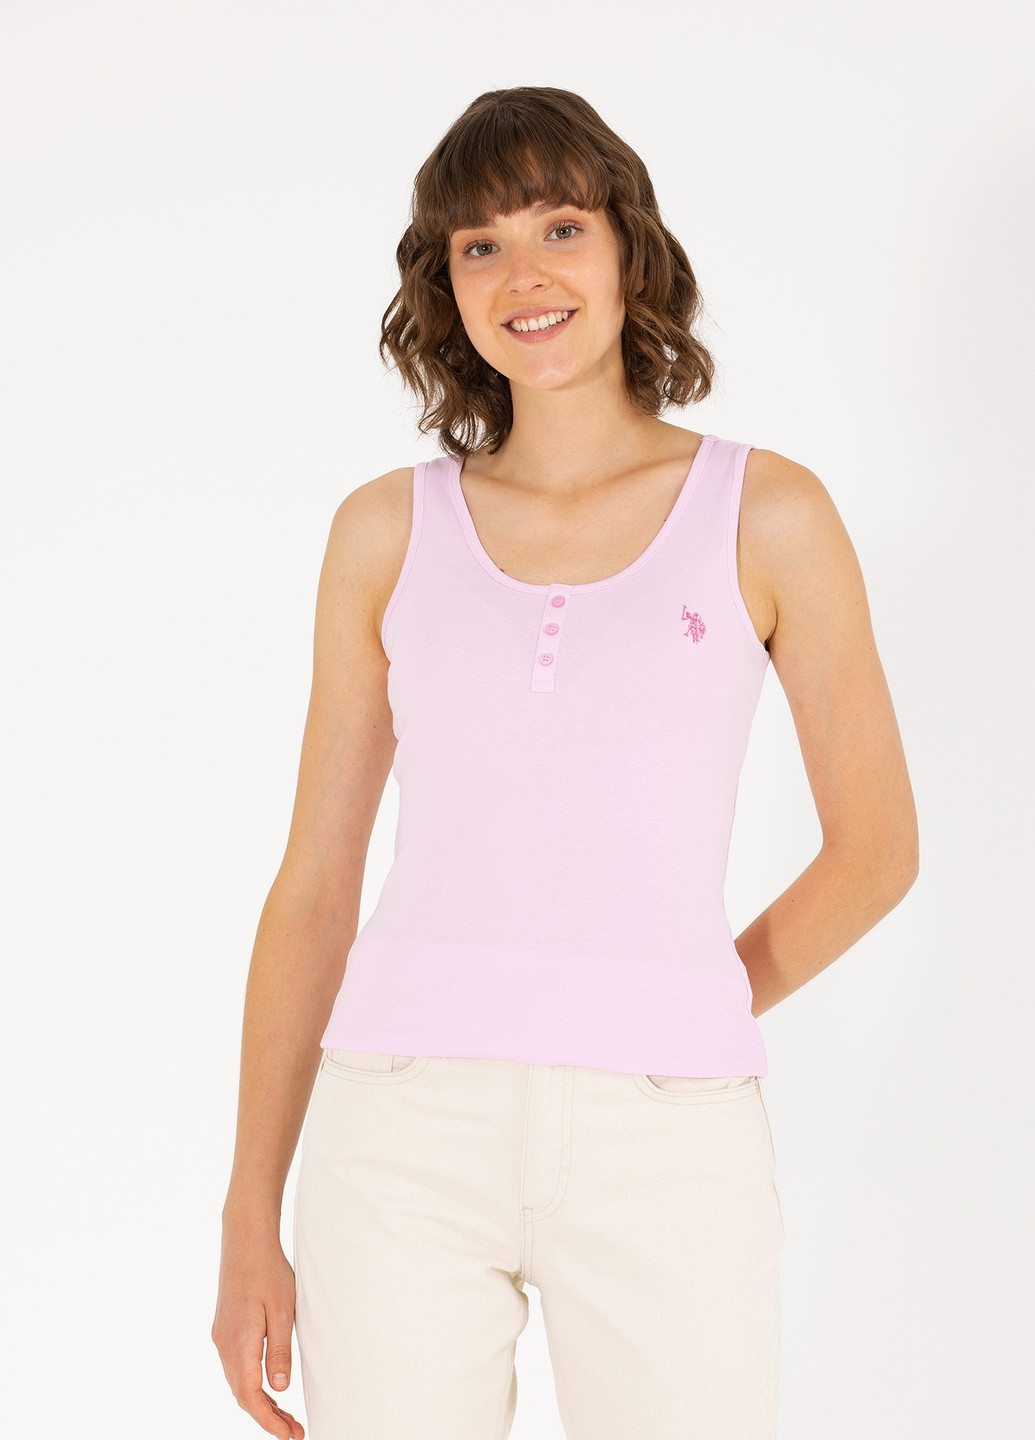 Розовая женская футболка-футболка u.s.polo assn женская U.S. Polo Assn.